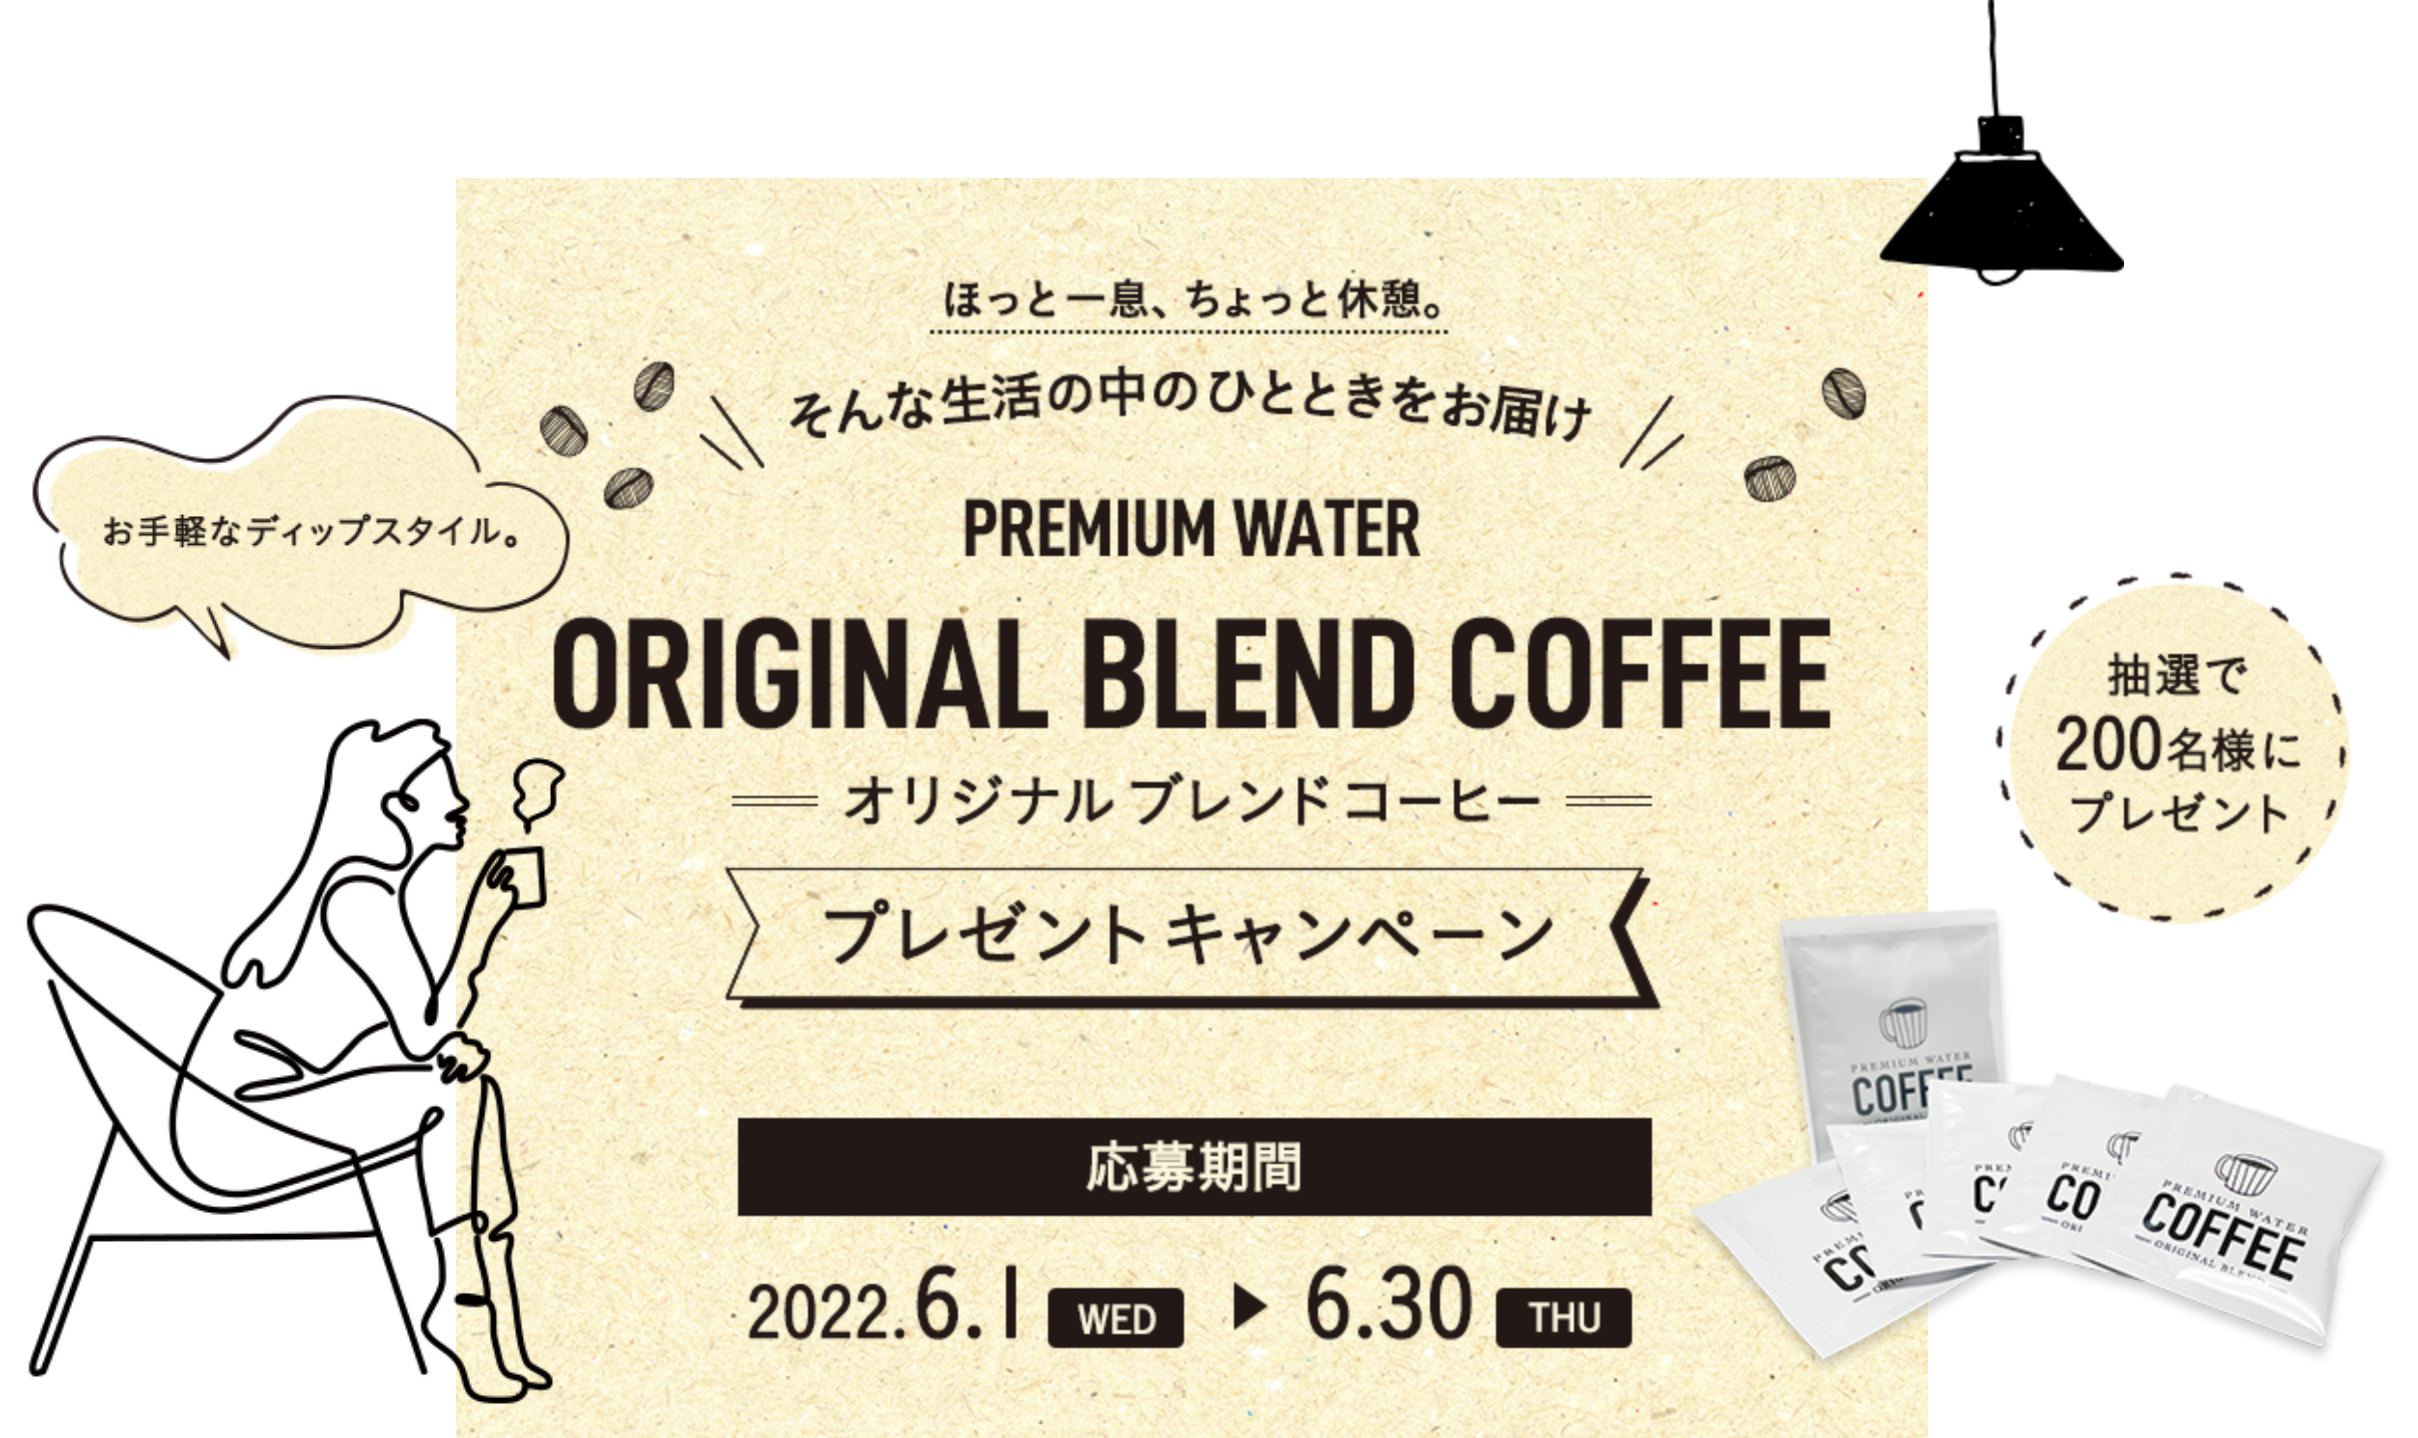 プレミアムウォーター オリジナルブレンドコーヒー プレゼントキャンペーン 2022.6.1(水)~2022.6.30(木)